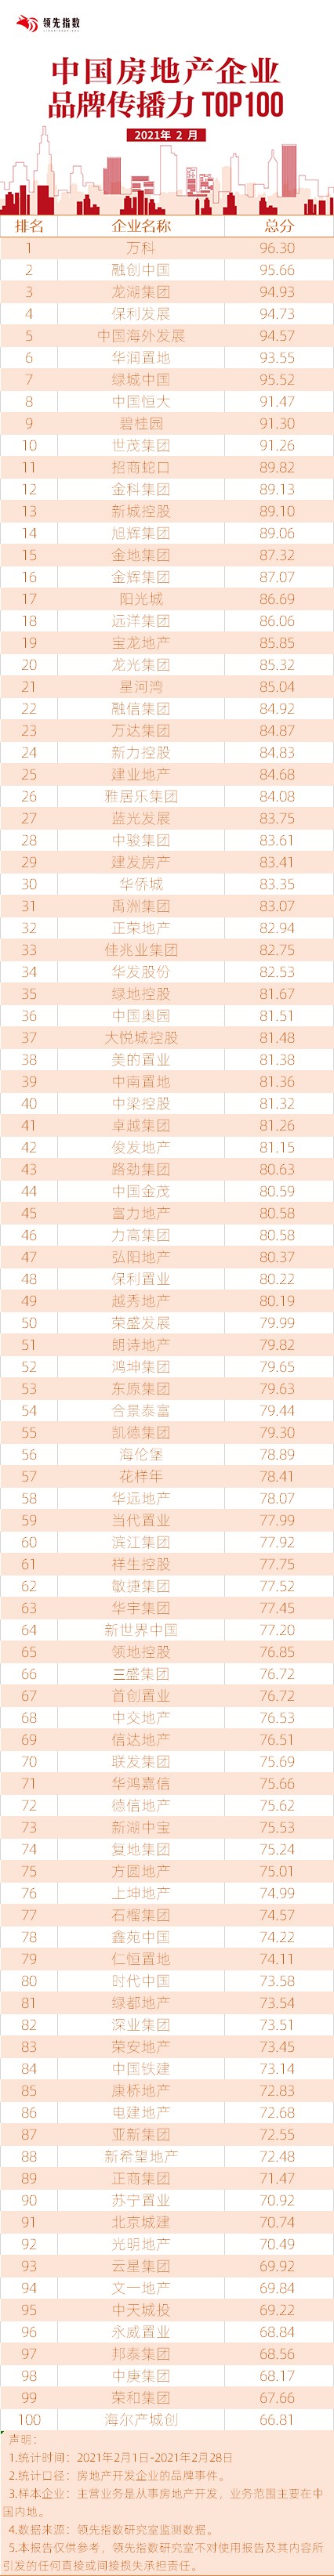 领先指数|2021年2月中国房地产企业品牌传播力TOP100